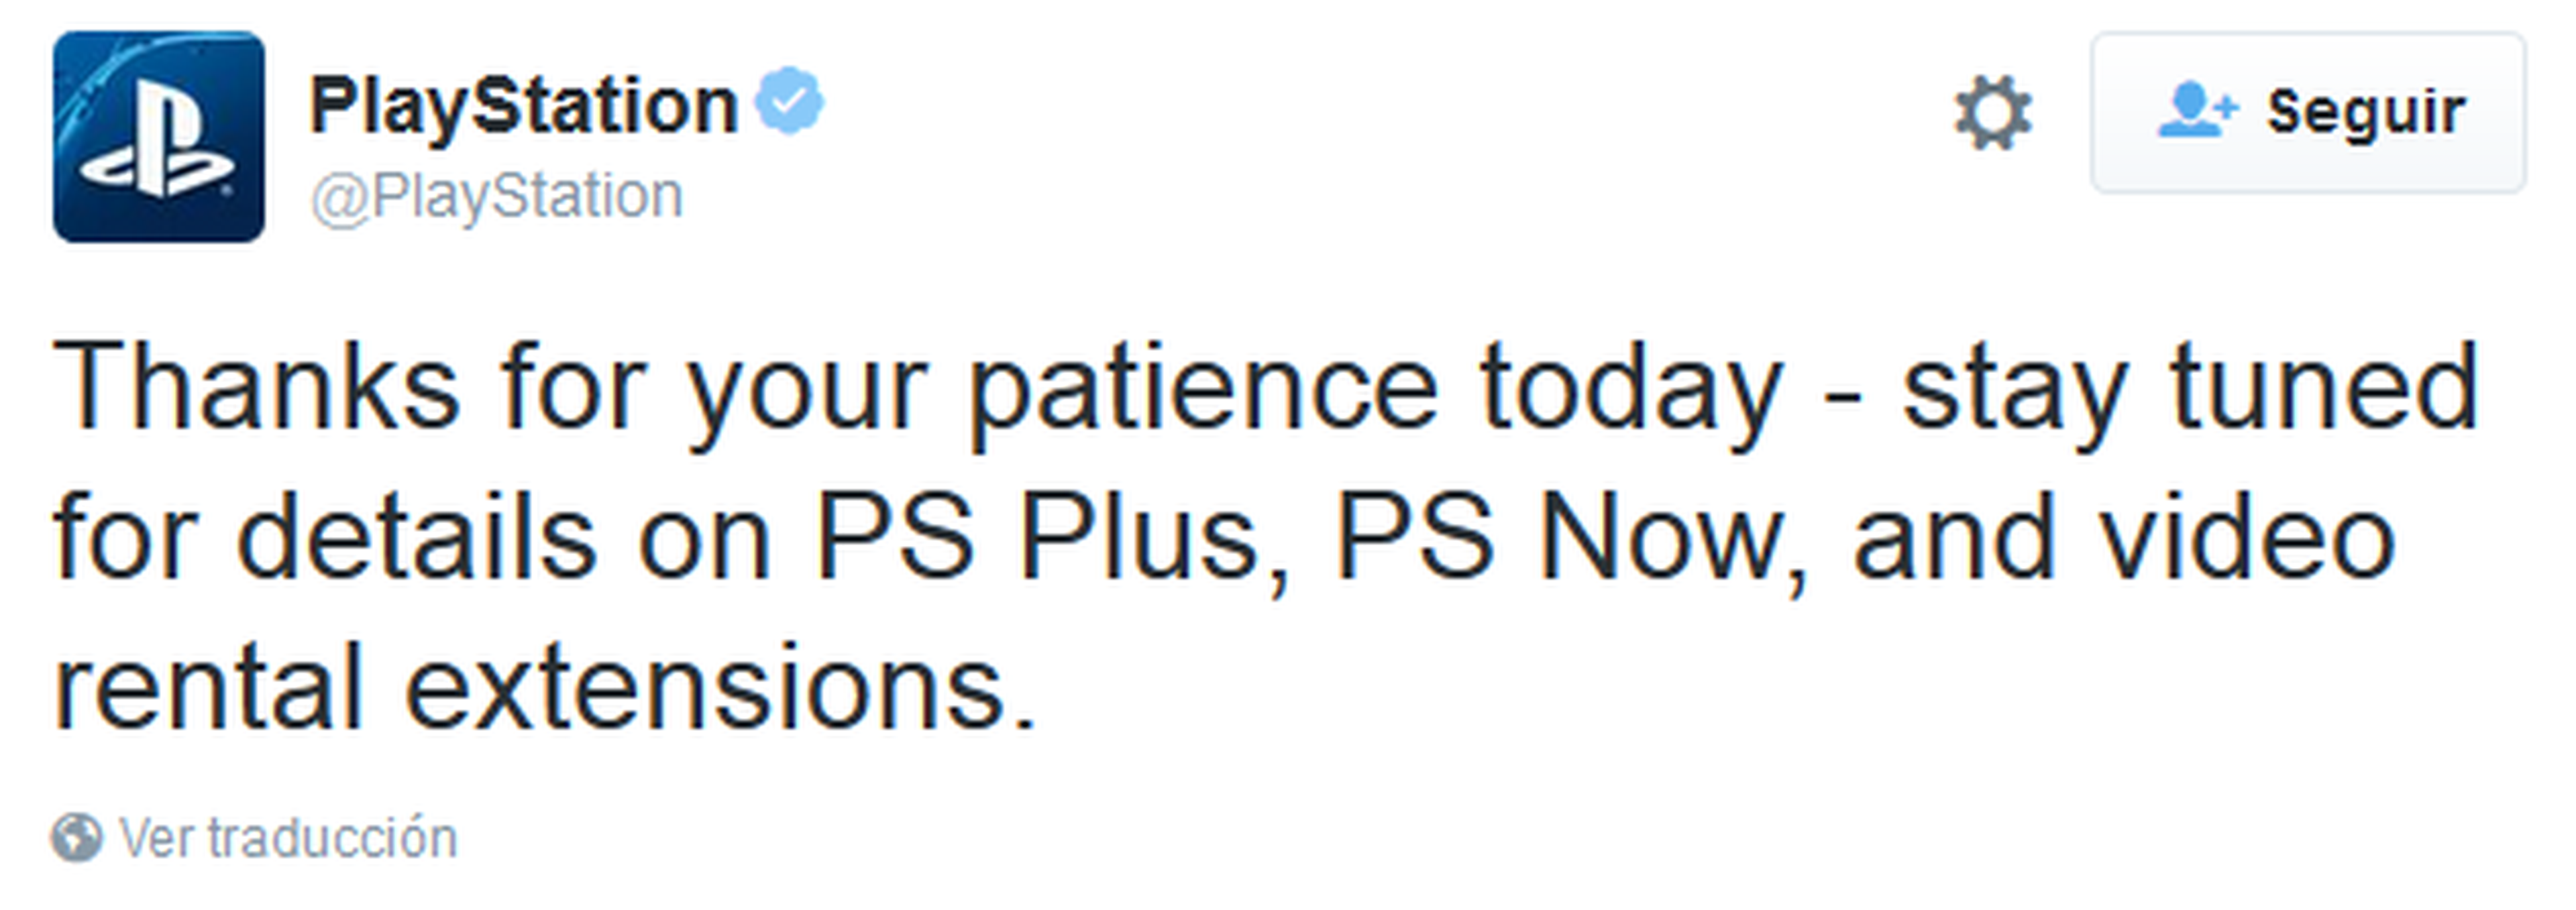 Caída de PSN, Sony comienza a mandar las compensaciones